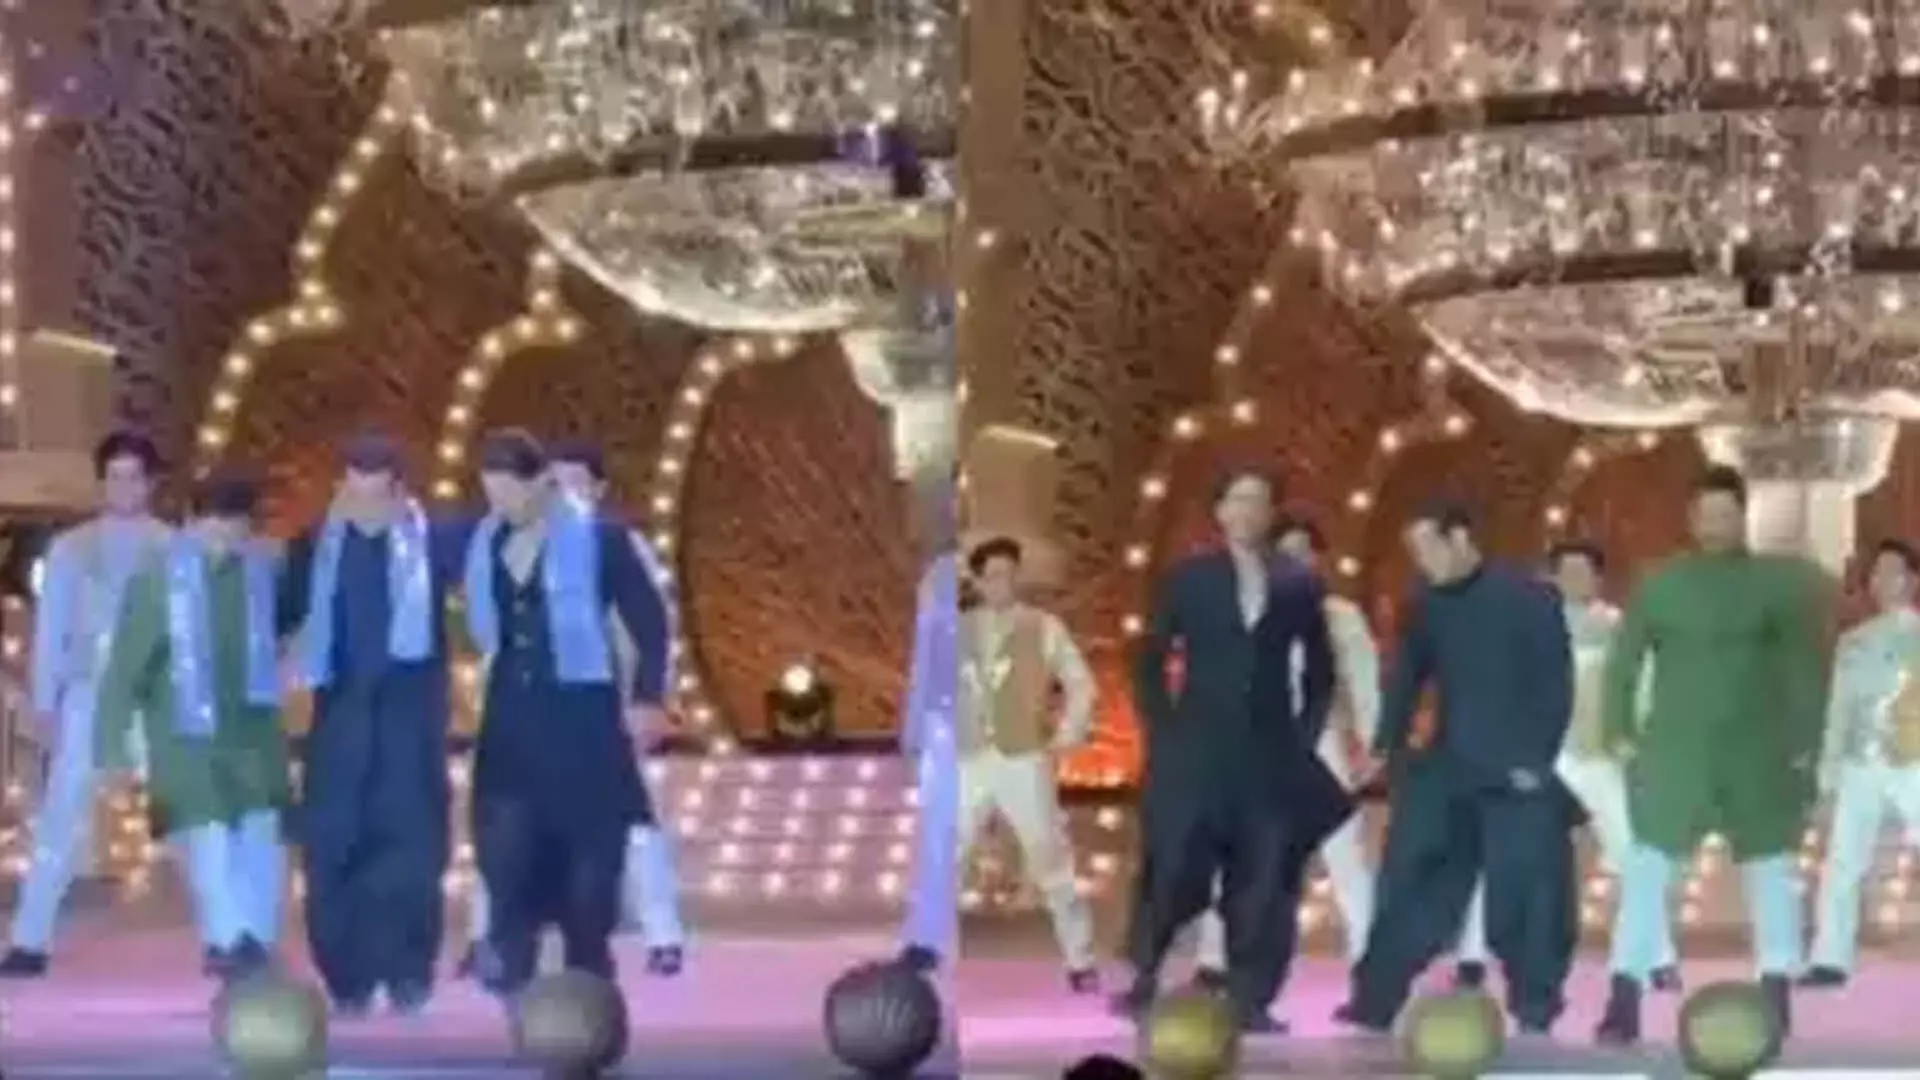 अनंत अंबानी और राधिका मर्चेंट की शादी से पहले के उत्सव में सलमान खान, शाहरुख खान, आमिर खान ने नातू नातू पर डांस किया